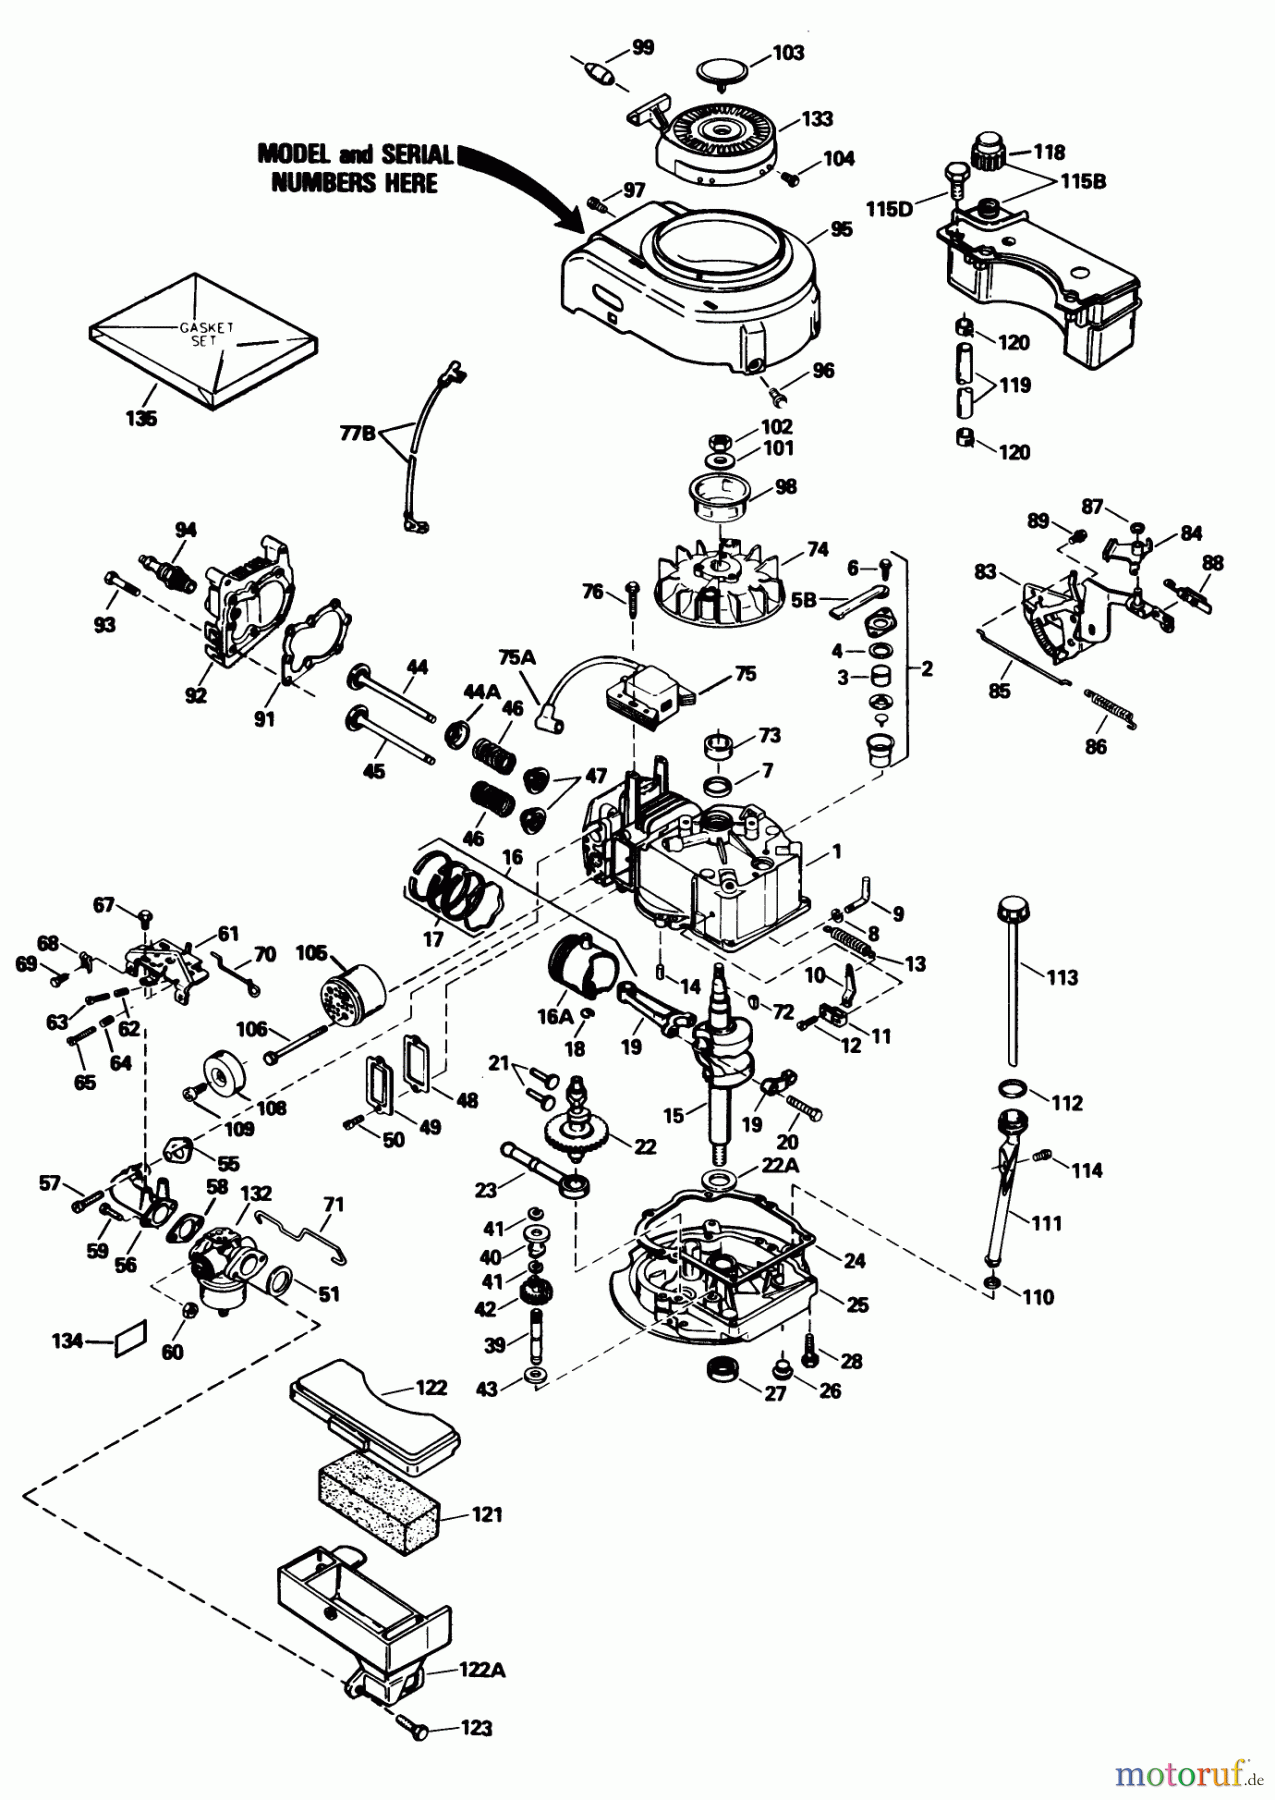  Toro Neu Mowers, Walk-Behind Seite 1 16575C - Toro Lawnmower, 1989 (9000001-9999999) ENGINE TECUMSEH MODEL NO. TVS100-44016B